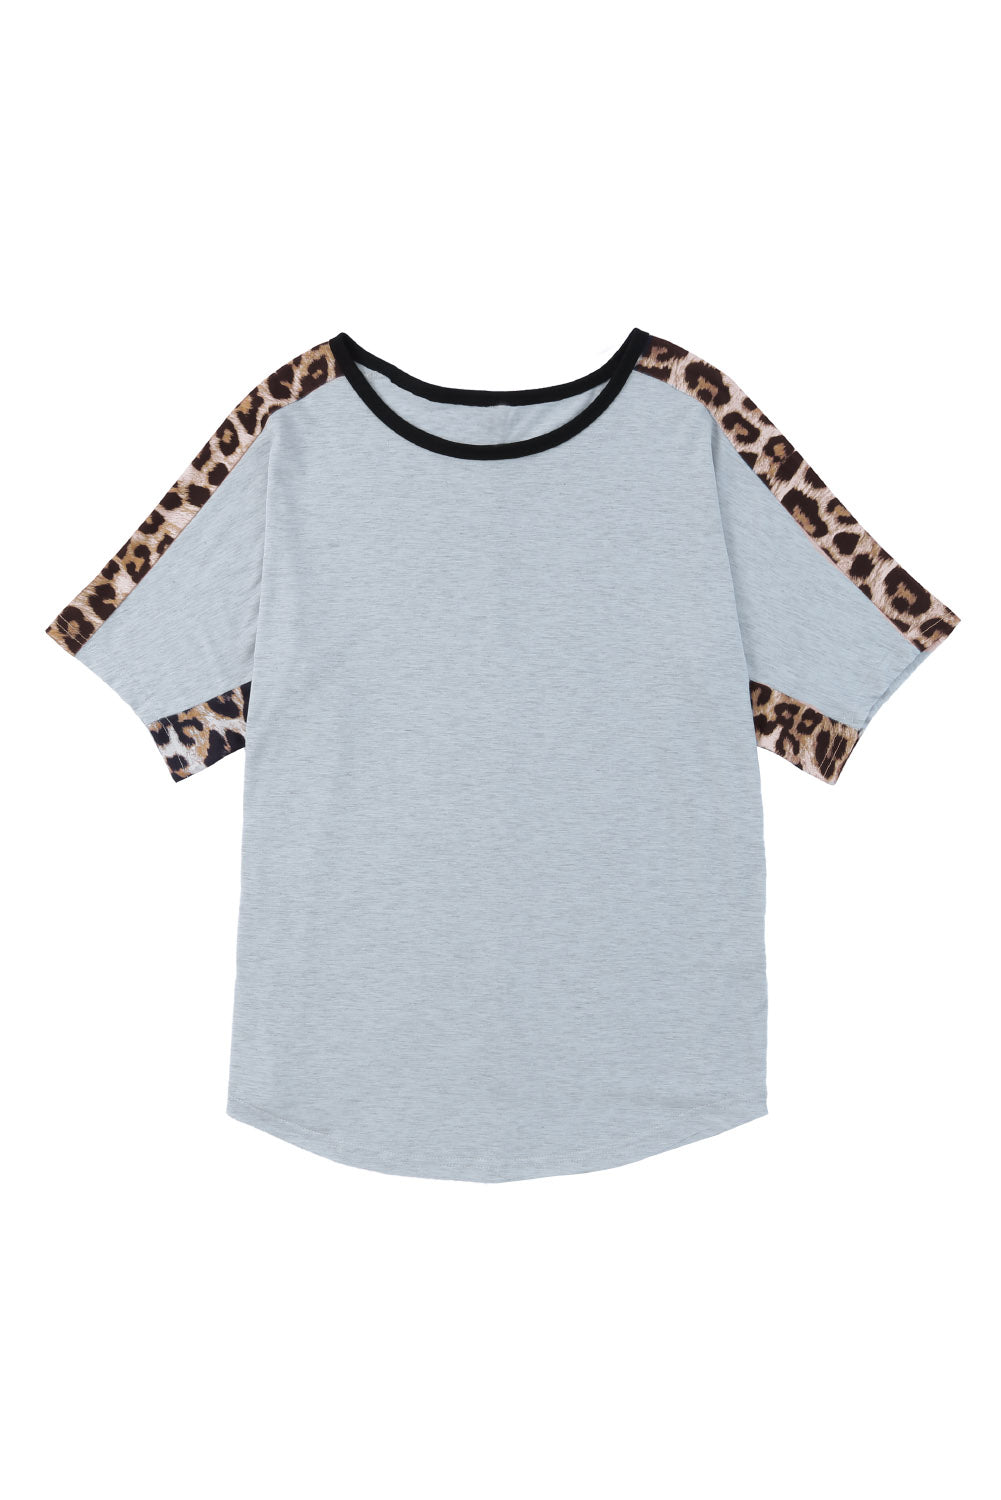 T-shirt gris à manches courtes et col rond avec épissage léopard